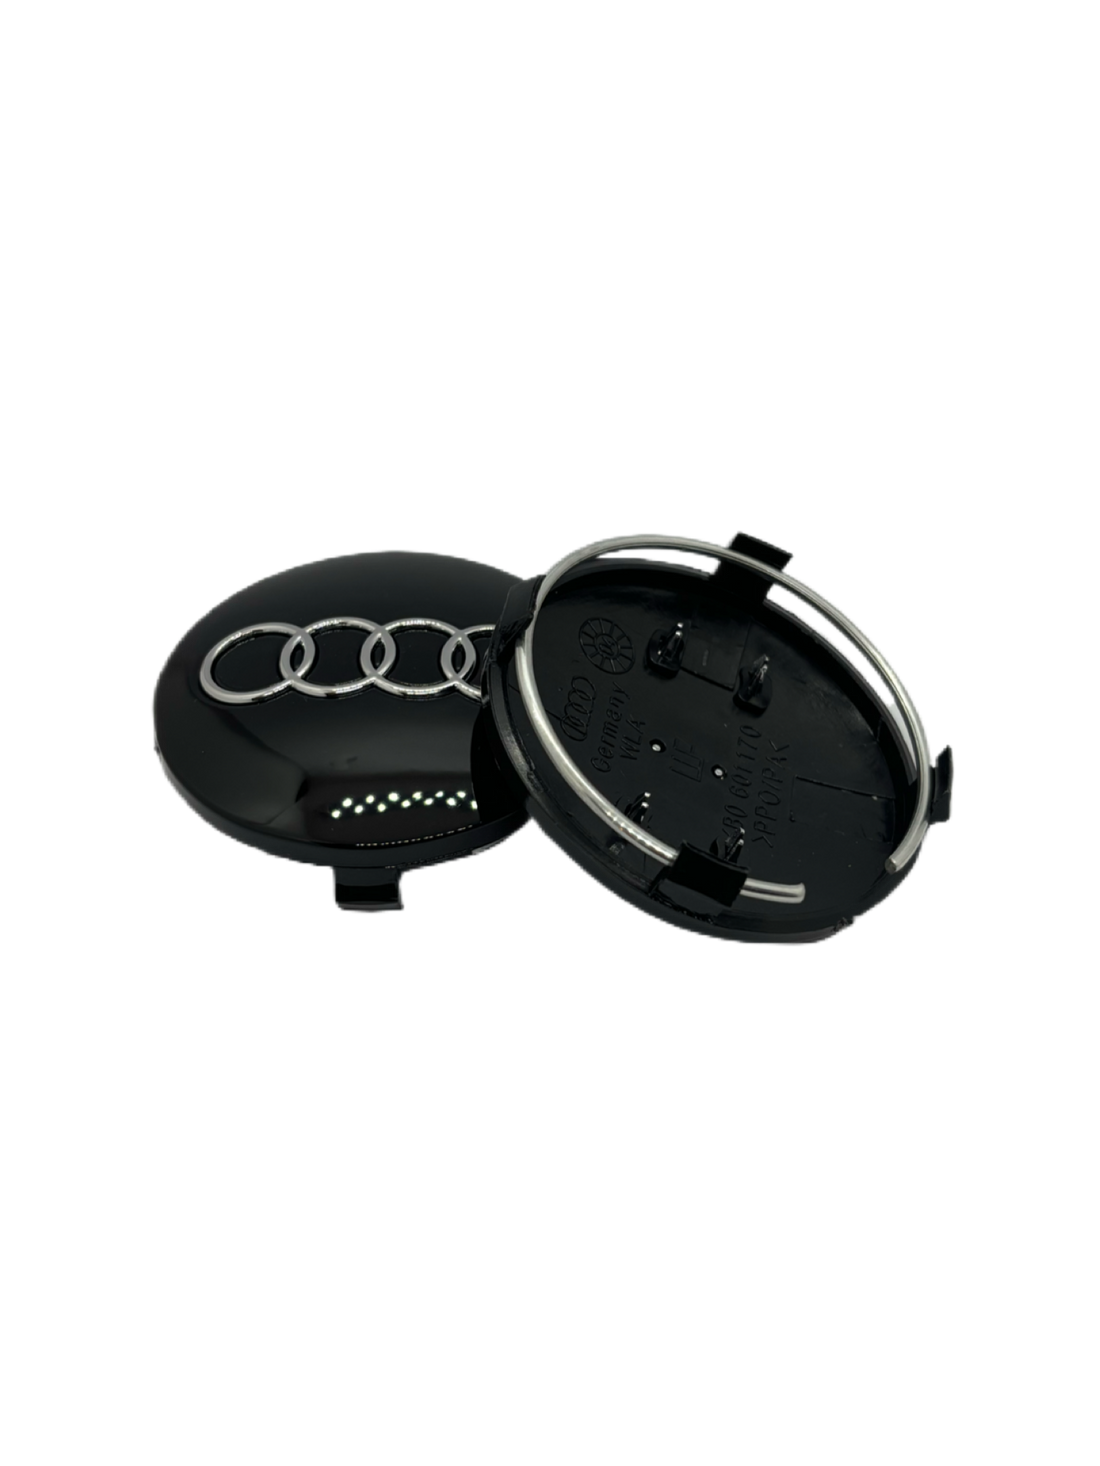 Audi centerkapsler i sort, sæt med 4 stk - 60/68 mm - BilligStyling